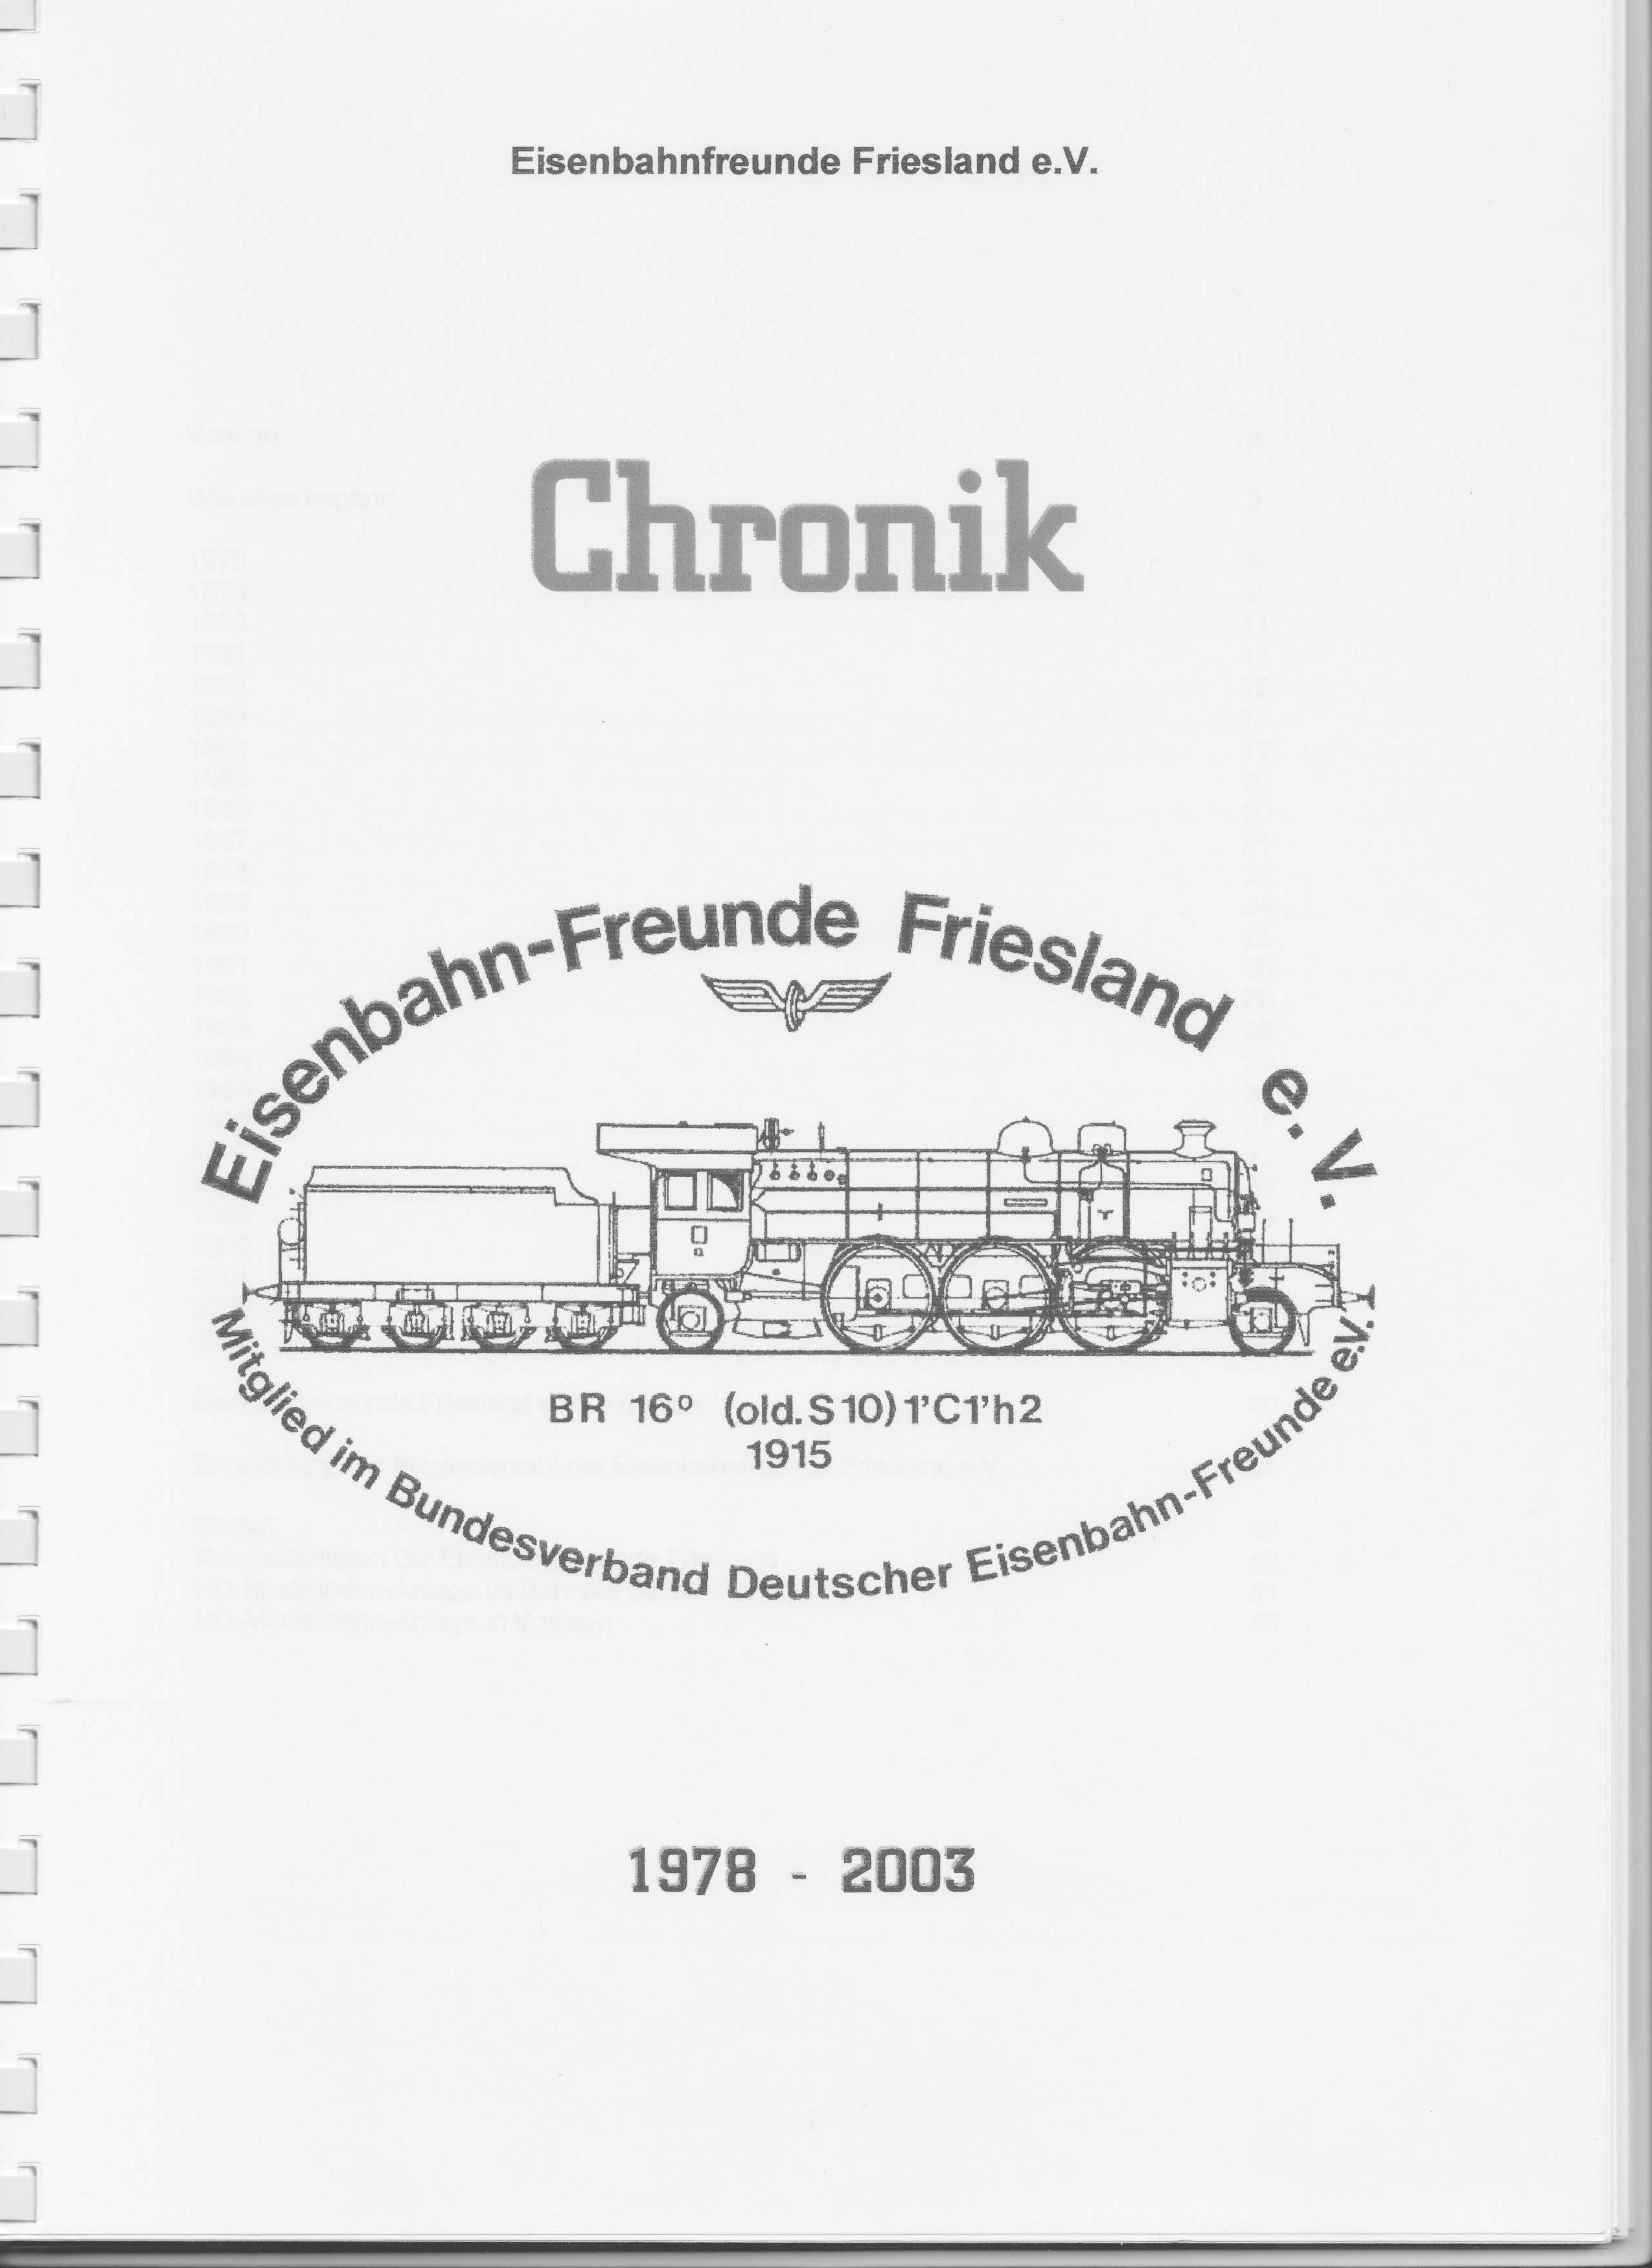 Chronik der Eisenbahnfreunde Friesland von 1978 bis 2003